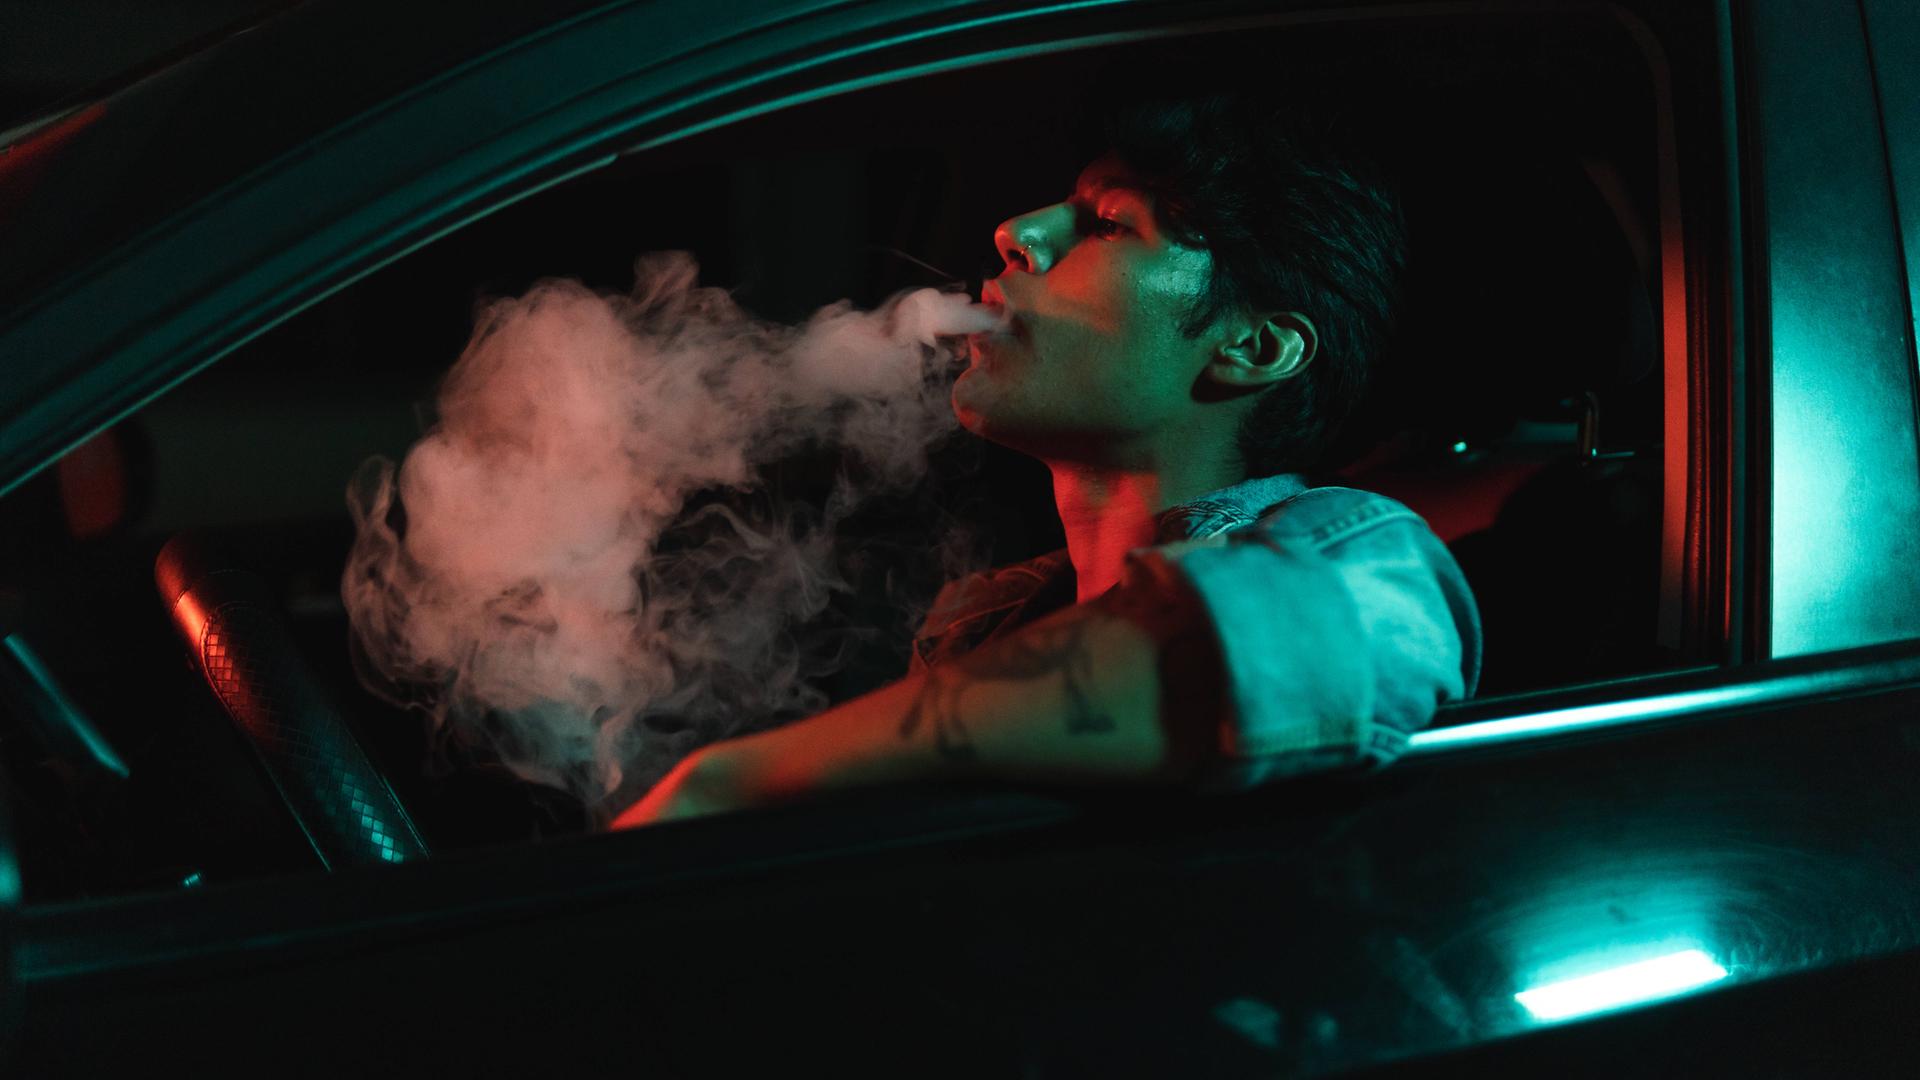 Ein junger Mann sitzt nachts in einem Auto und raucht.